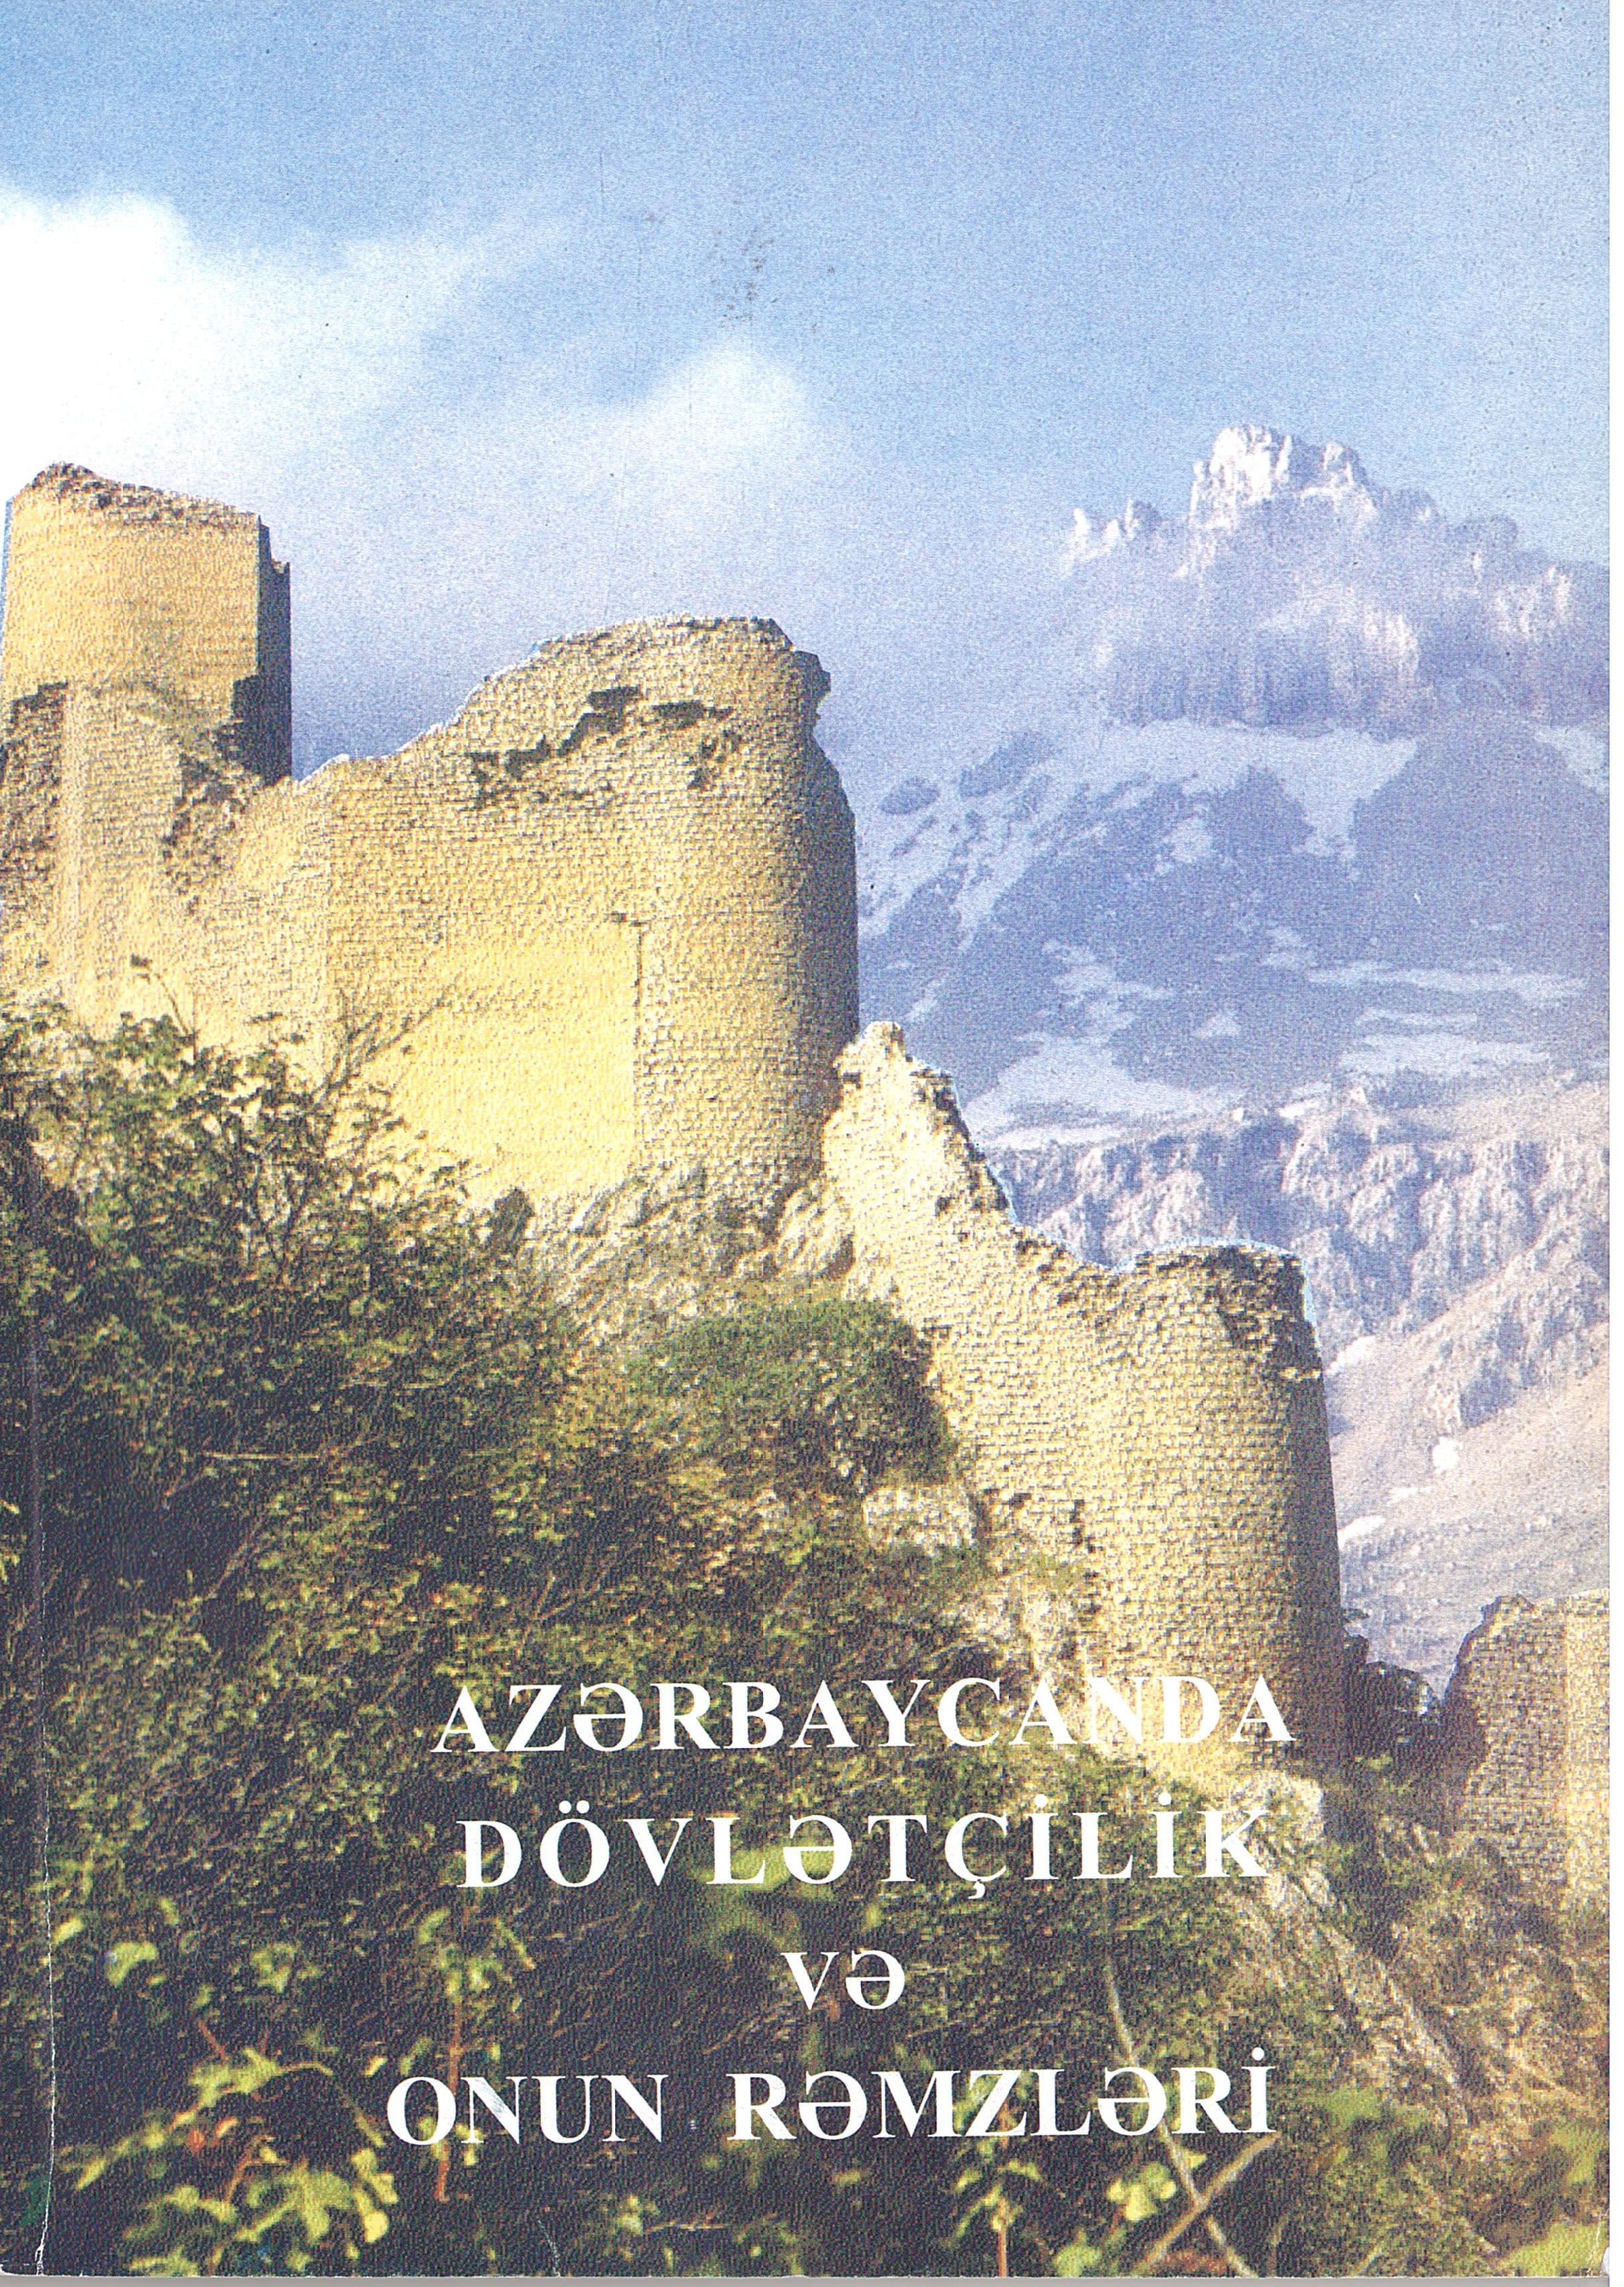  Государственность в Азербайджане и её символы